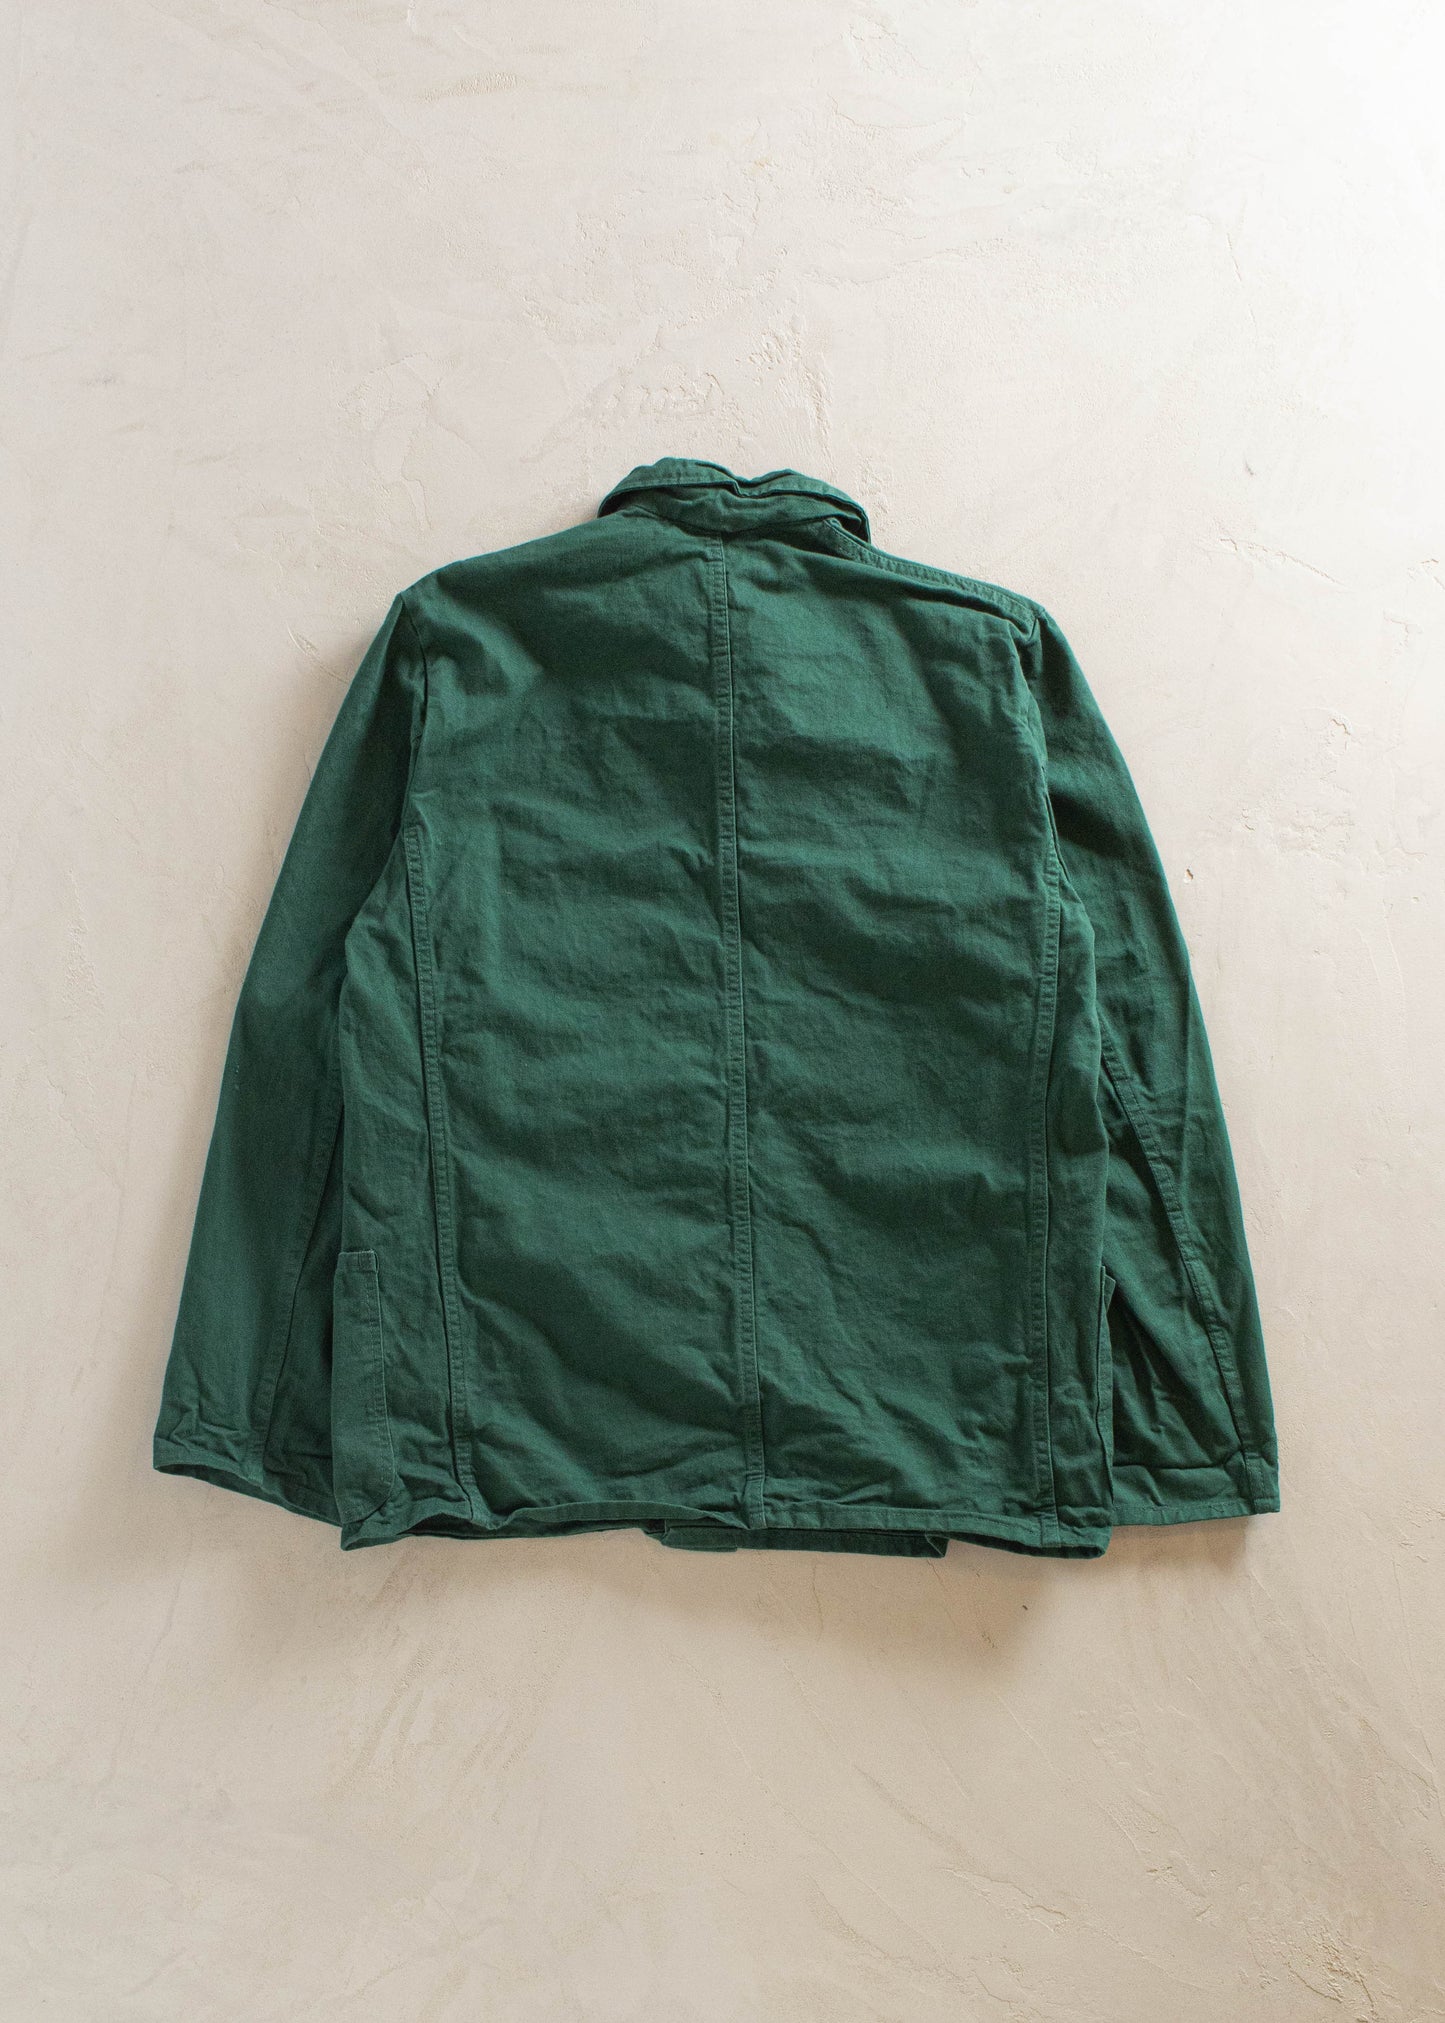 1980s Kuno French Workwear Chore Jacket Size S/M